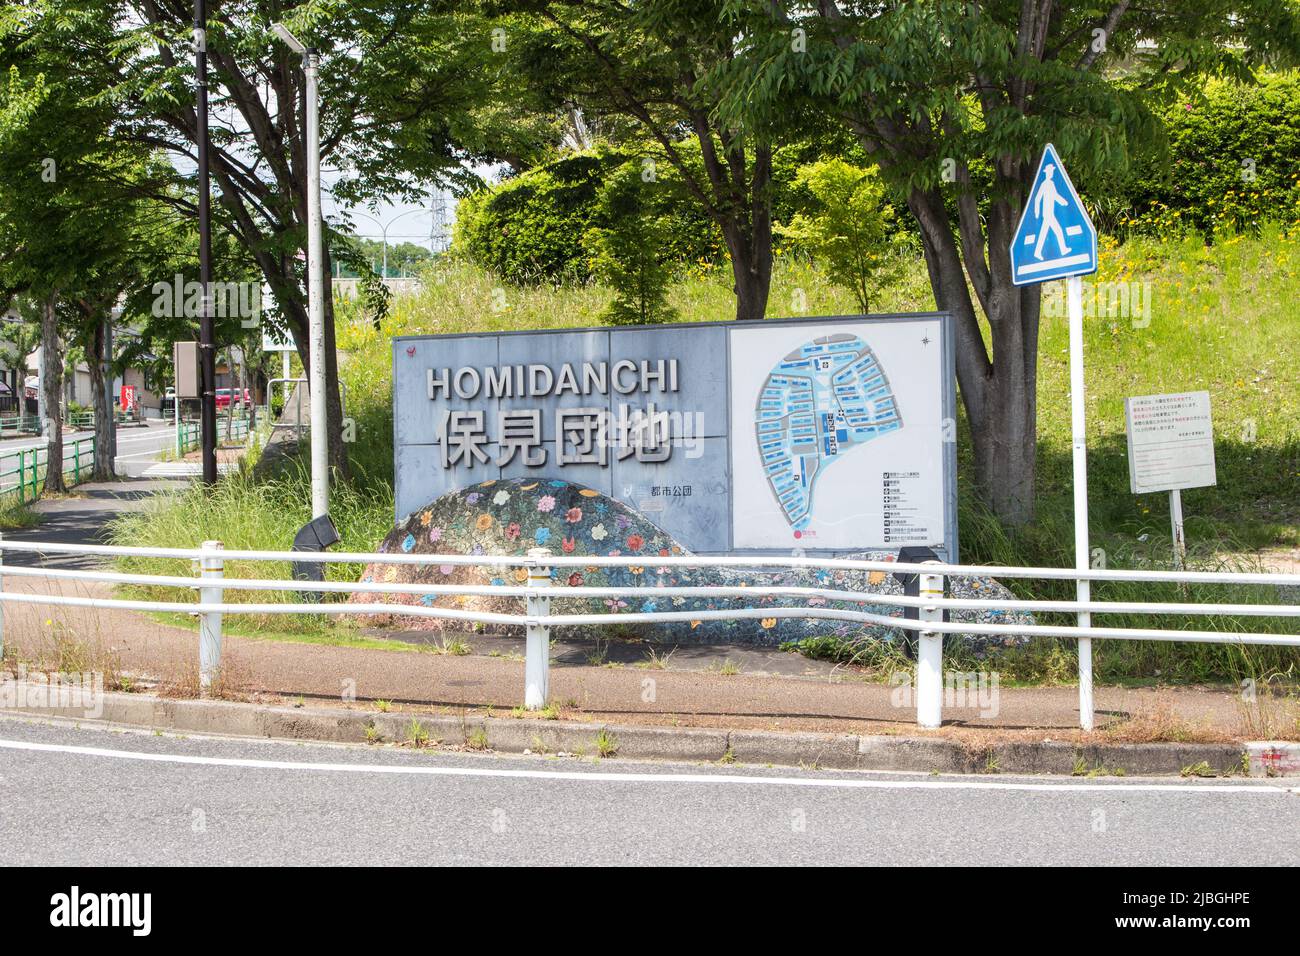 Aichi, Japon - 17 mai 2019 : Guide de l'hôtel 'Hoi Danchi' (complexe d'appartements Hoi). Homi Danchi est l'endroit pour la communauté brésilienne au Japon. Banque D'Images